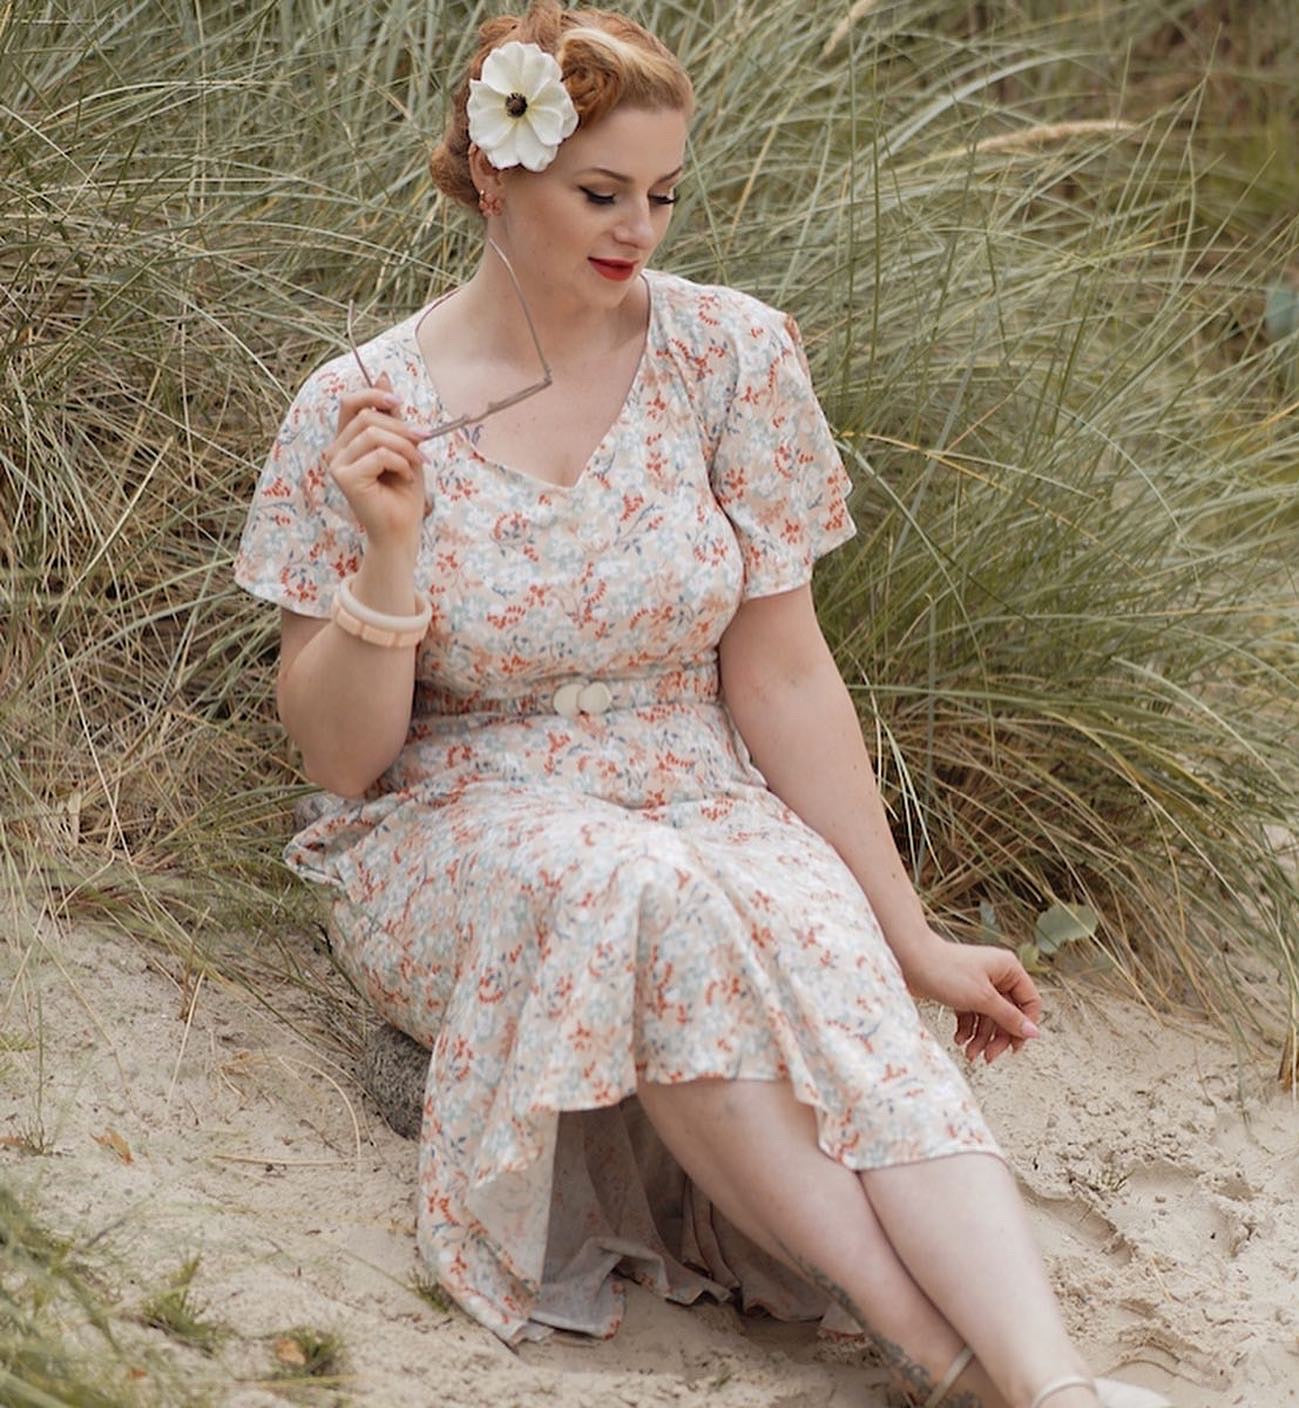 Frau am Strand im Blumenkleid